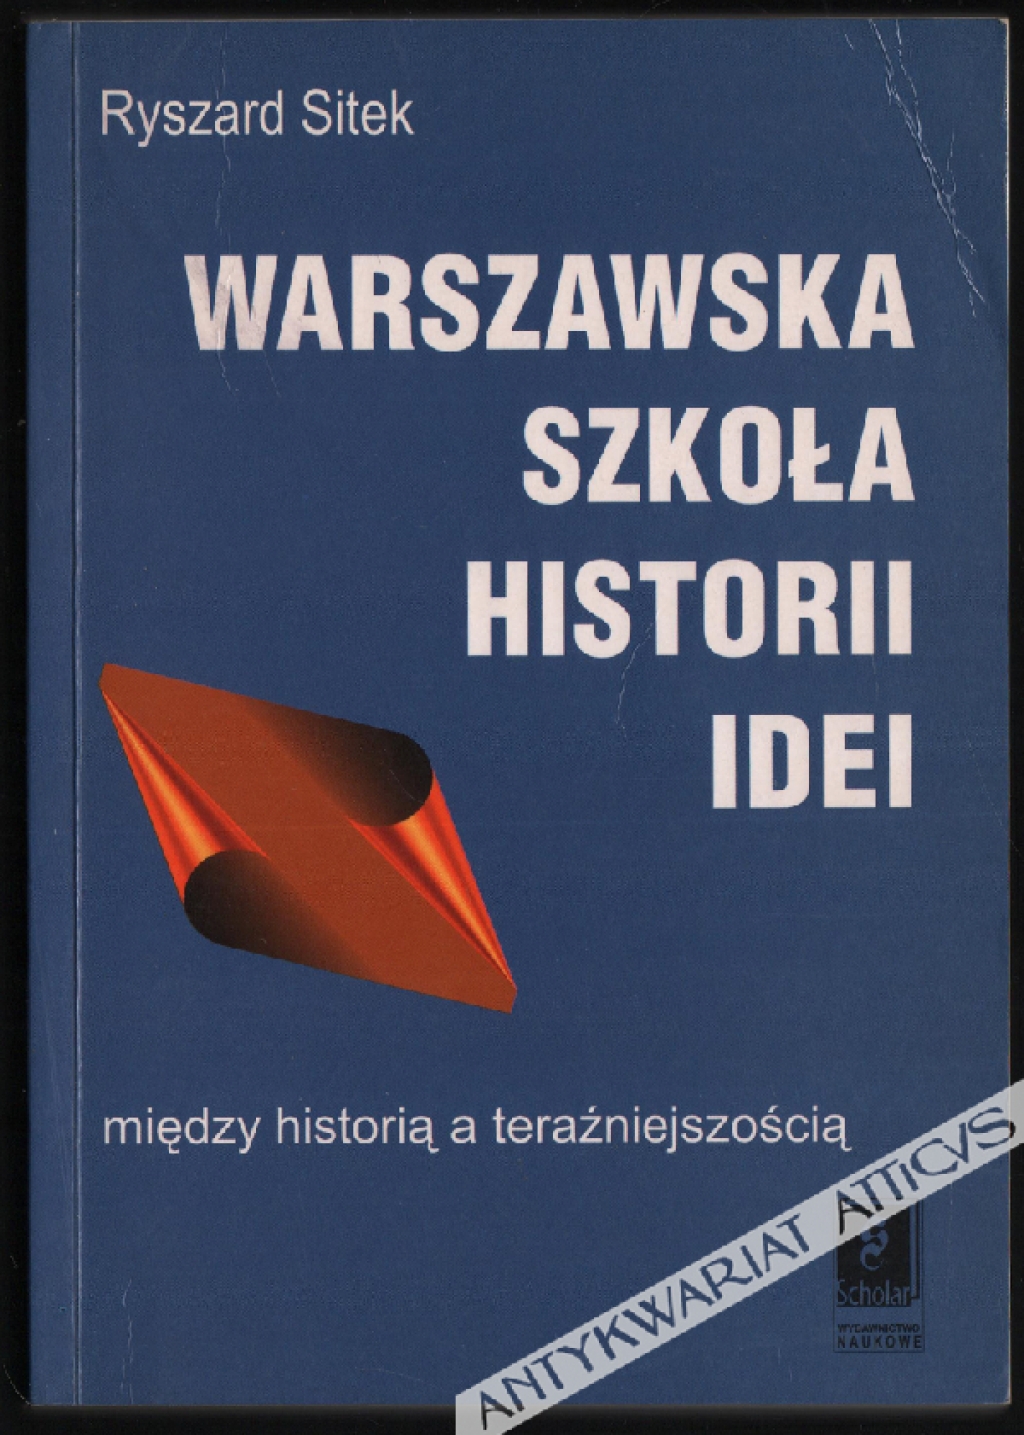 Warszawska szkoła historii idei. Między historią a teraźniejszością